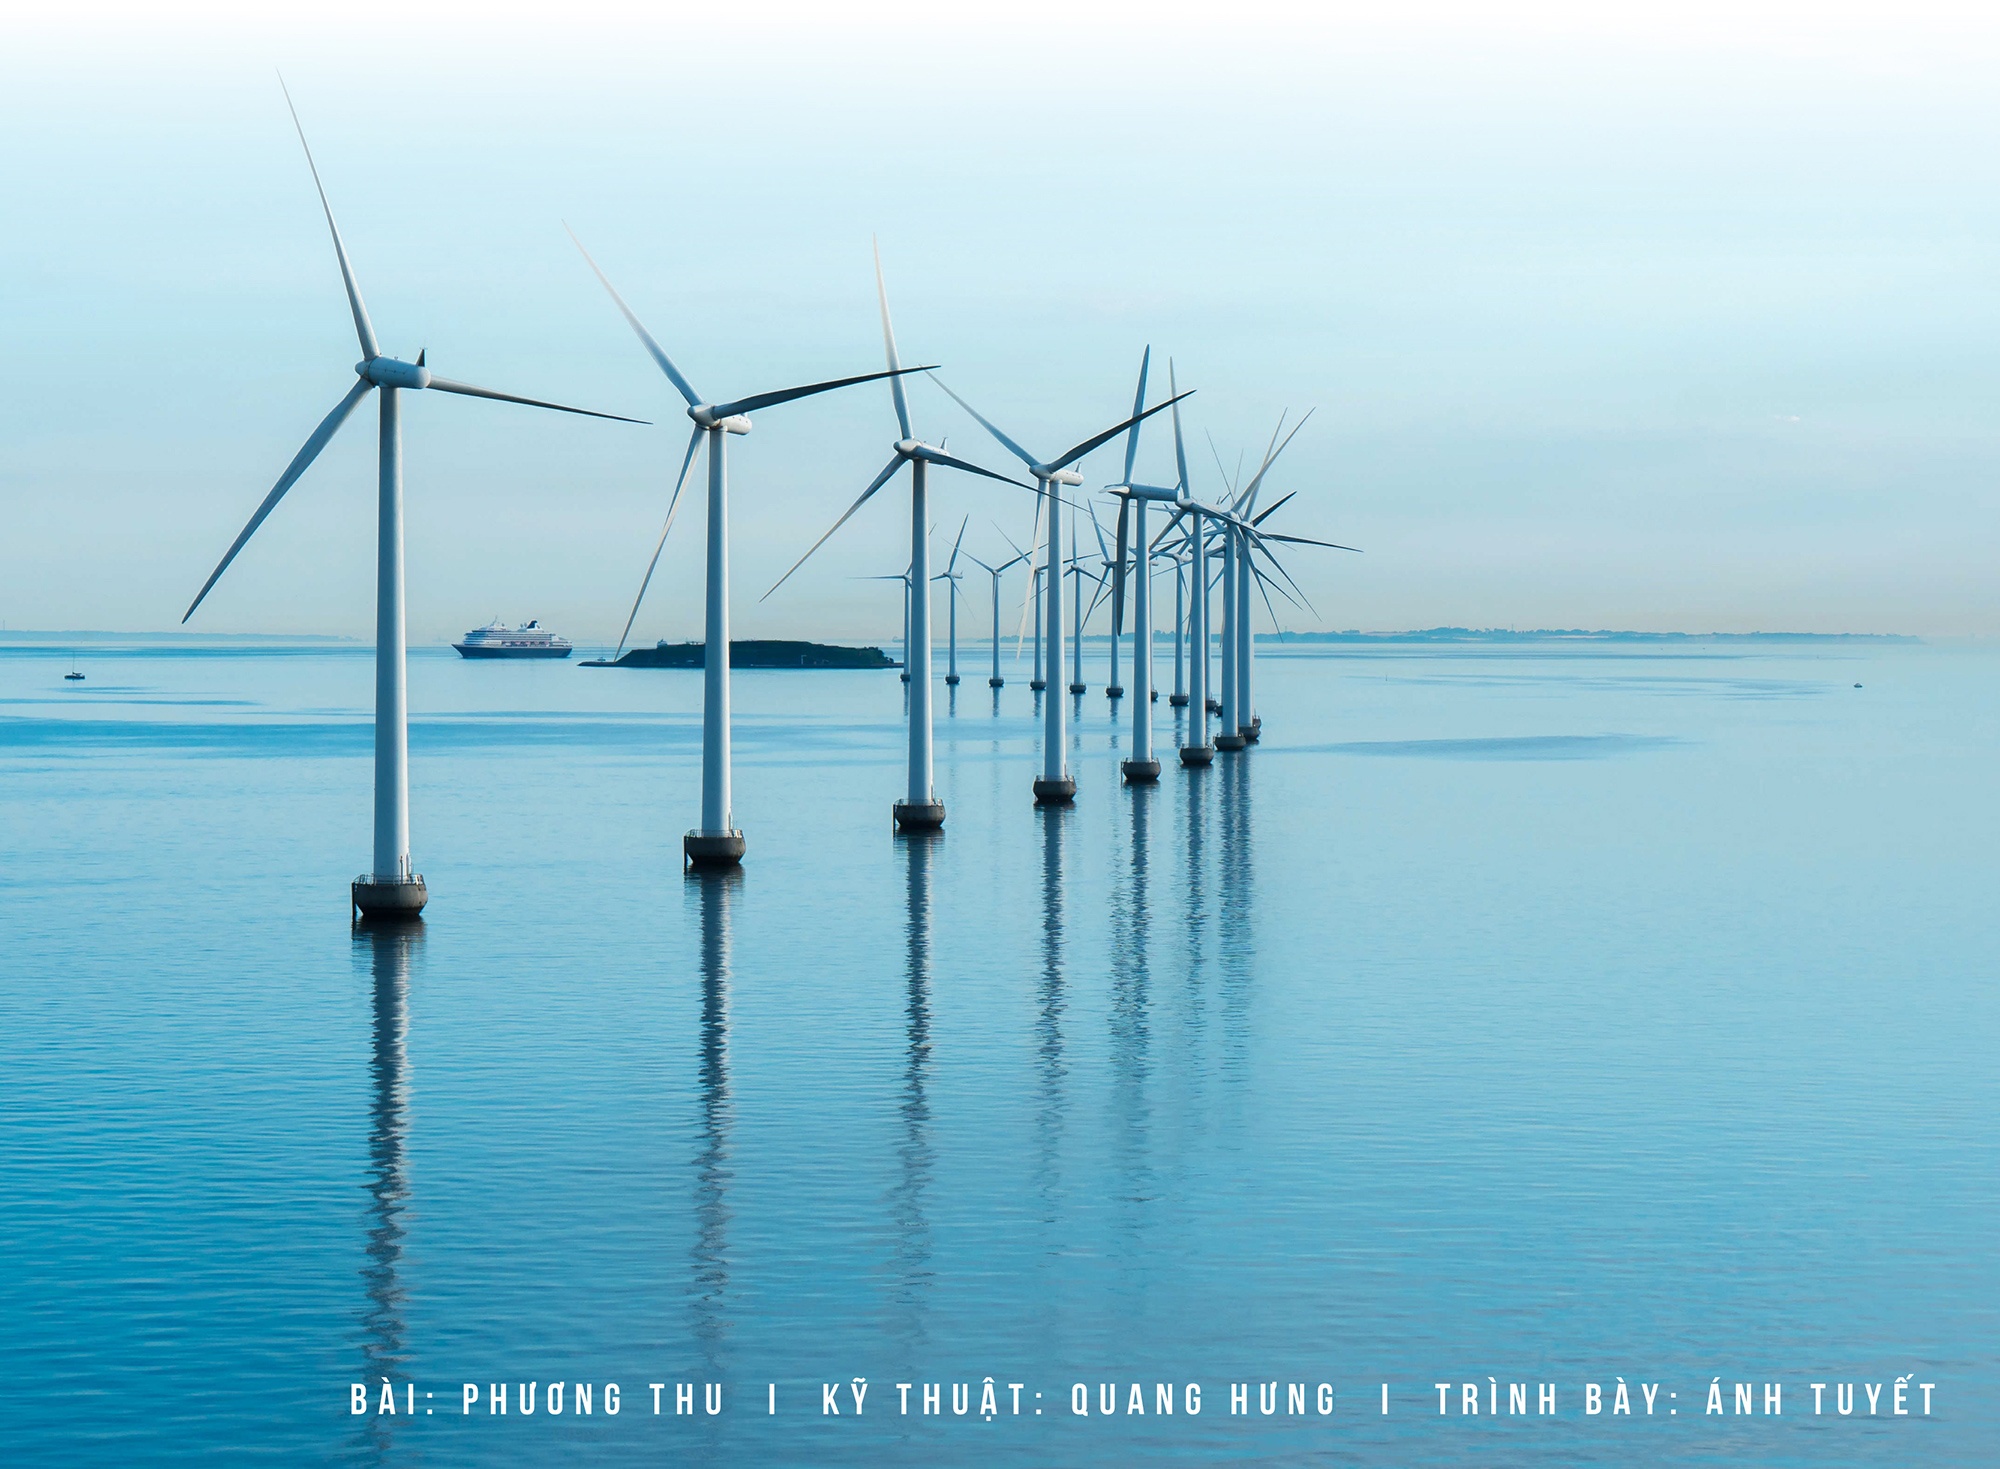 Contributing to Vietnam’s green energy shift (Emagazine)